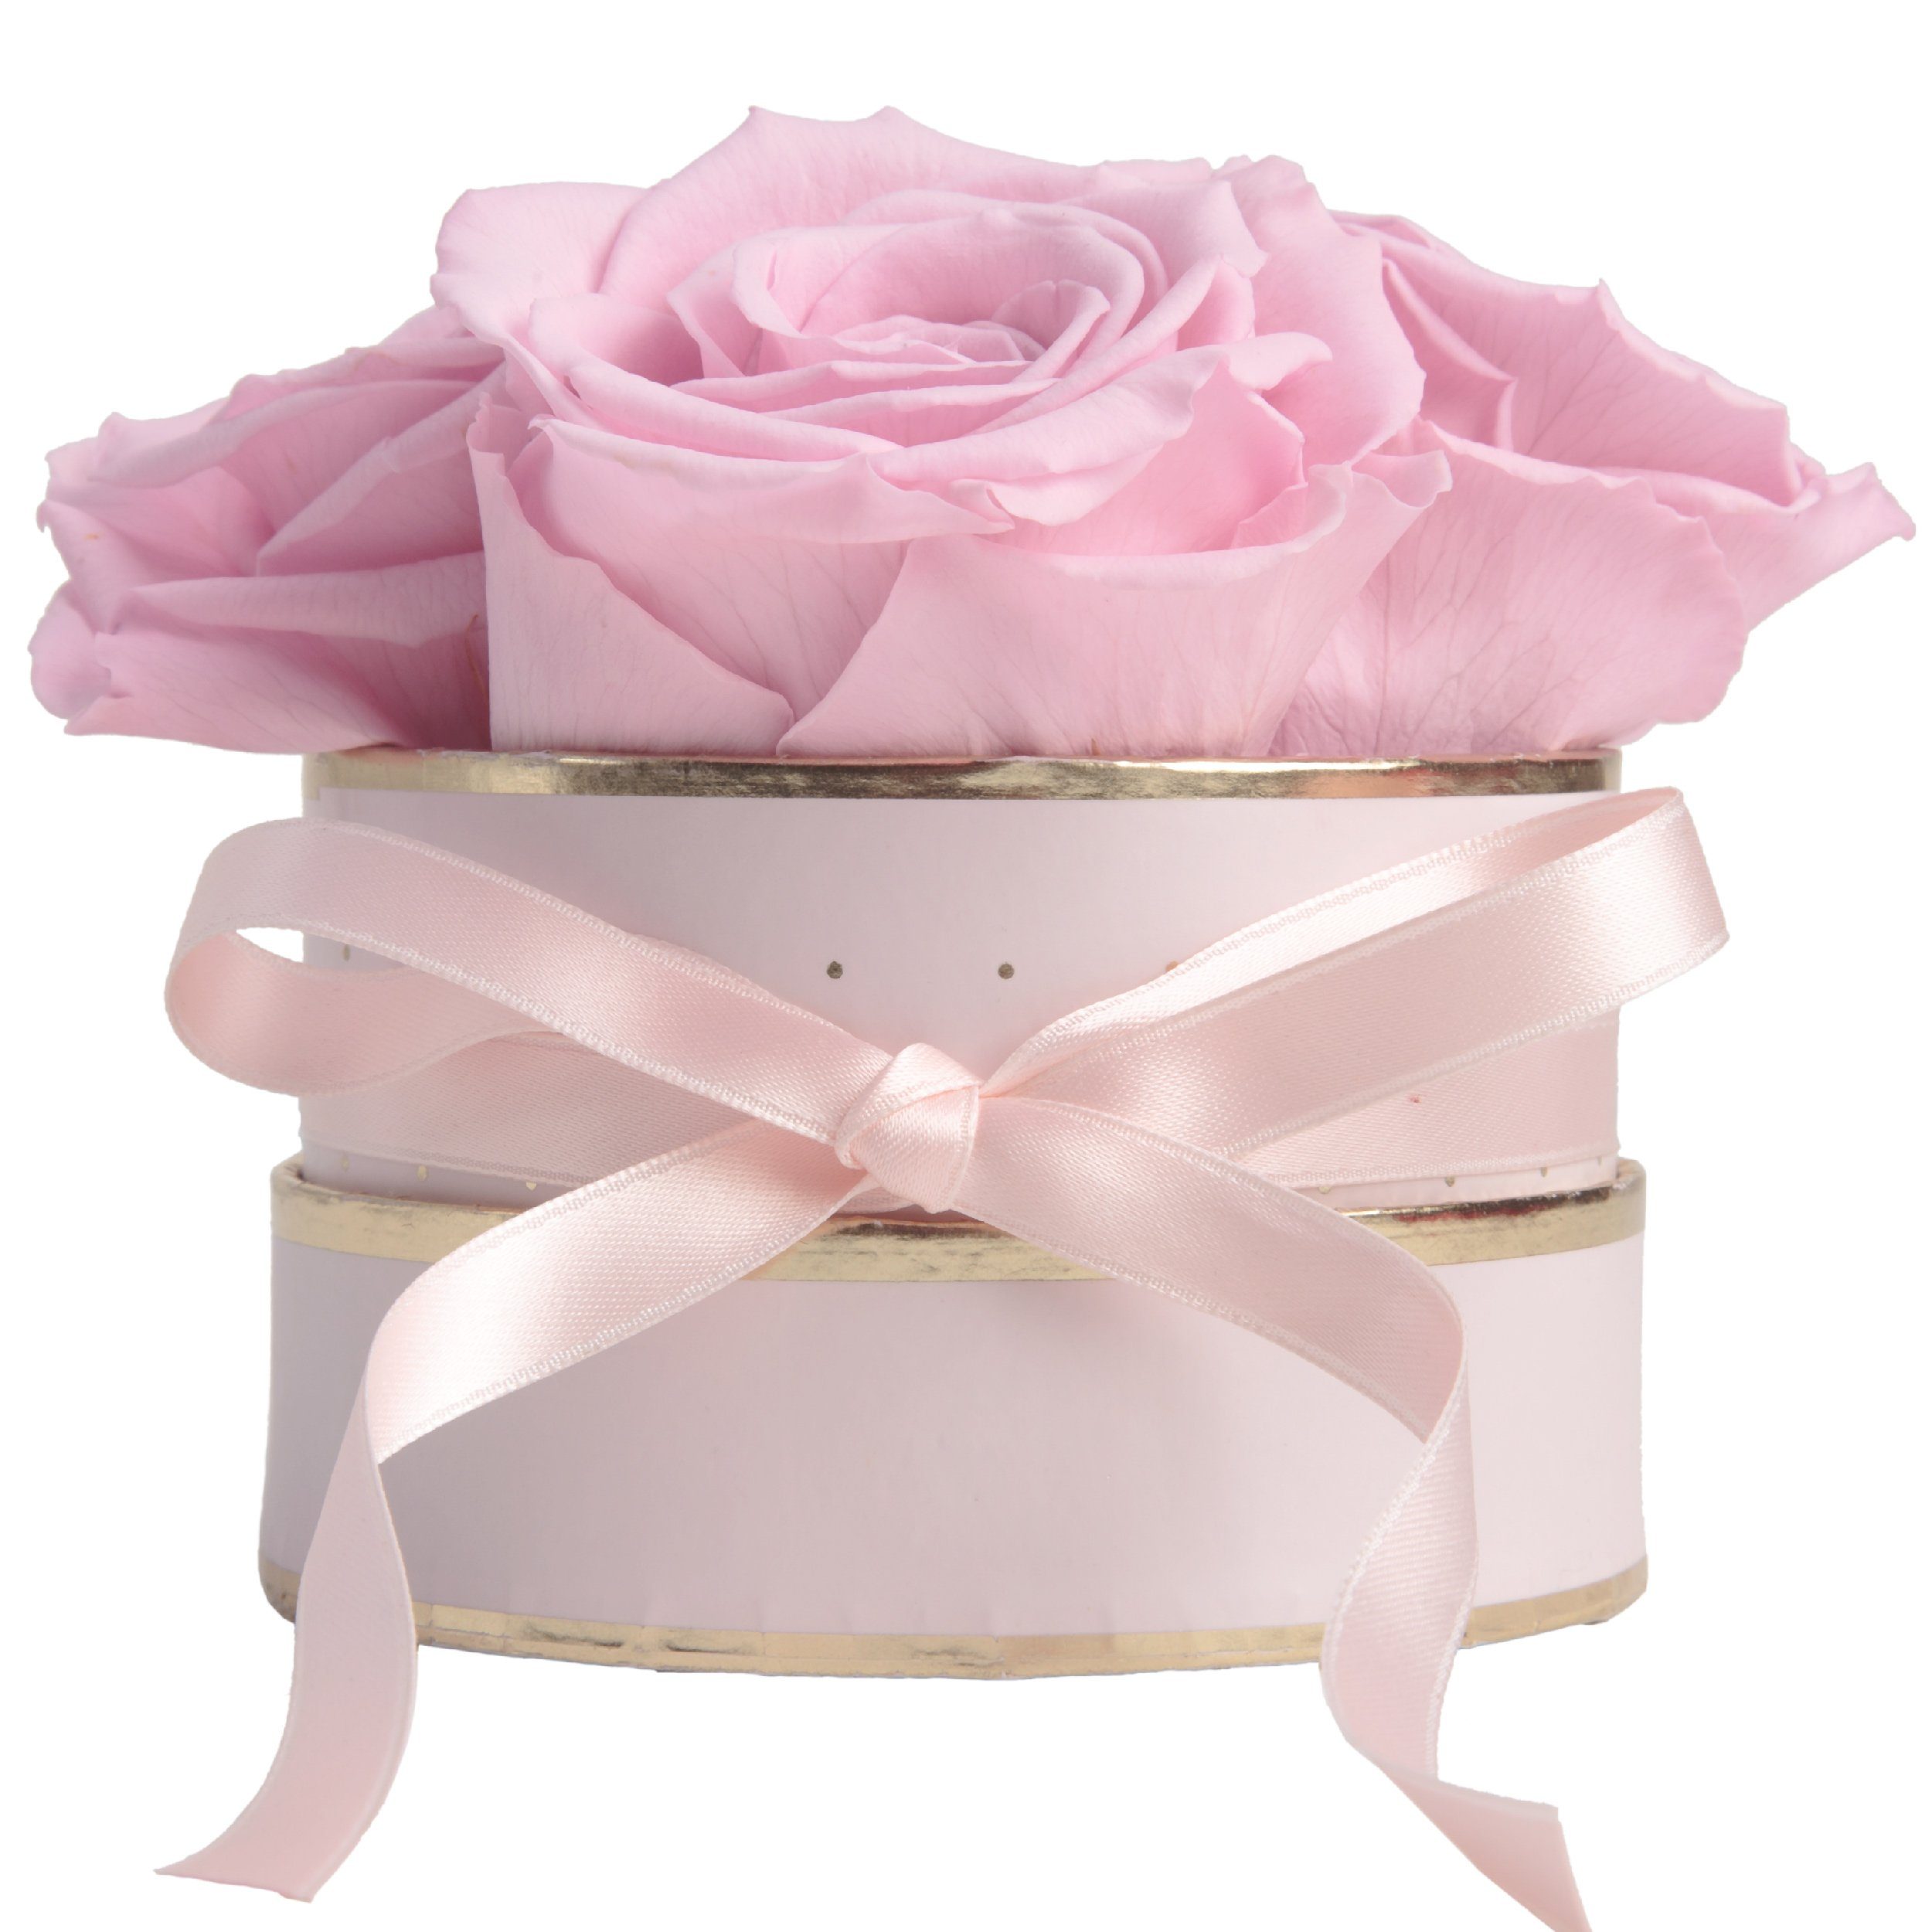 Rosenbox Frauen für Rosen konservierte rund Infinity ROSEMARIE 4 10 Rose, cm, Heidelberg, Kunstblume SCHULZ Geschenk Rosen echte konservierte rosa Höhe